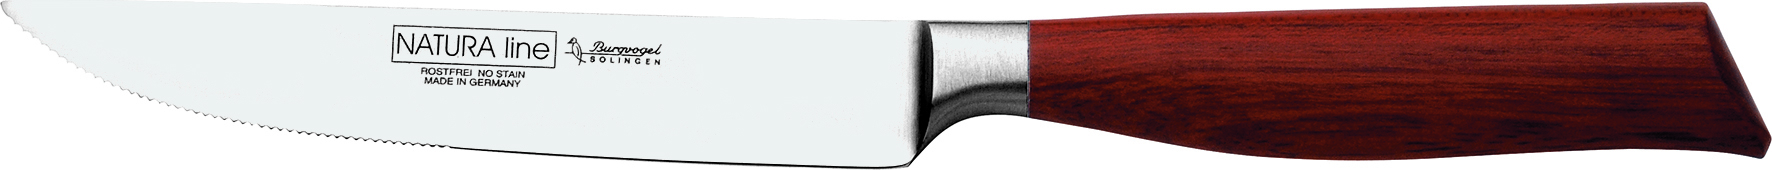 NATURA line - Steakmesser